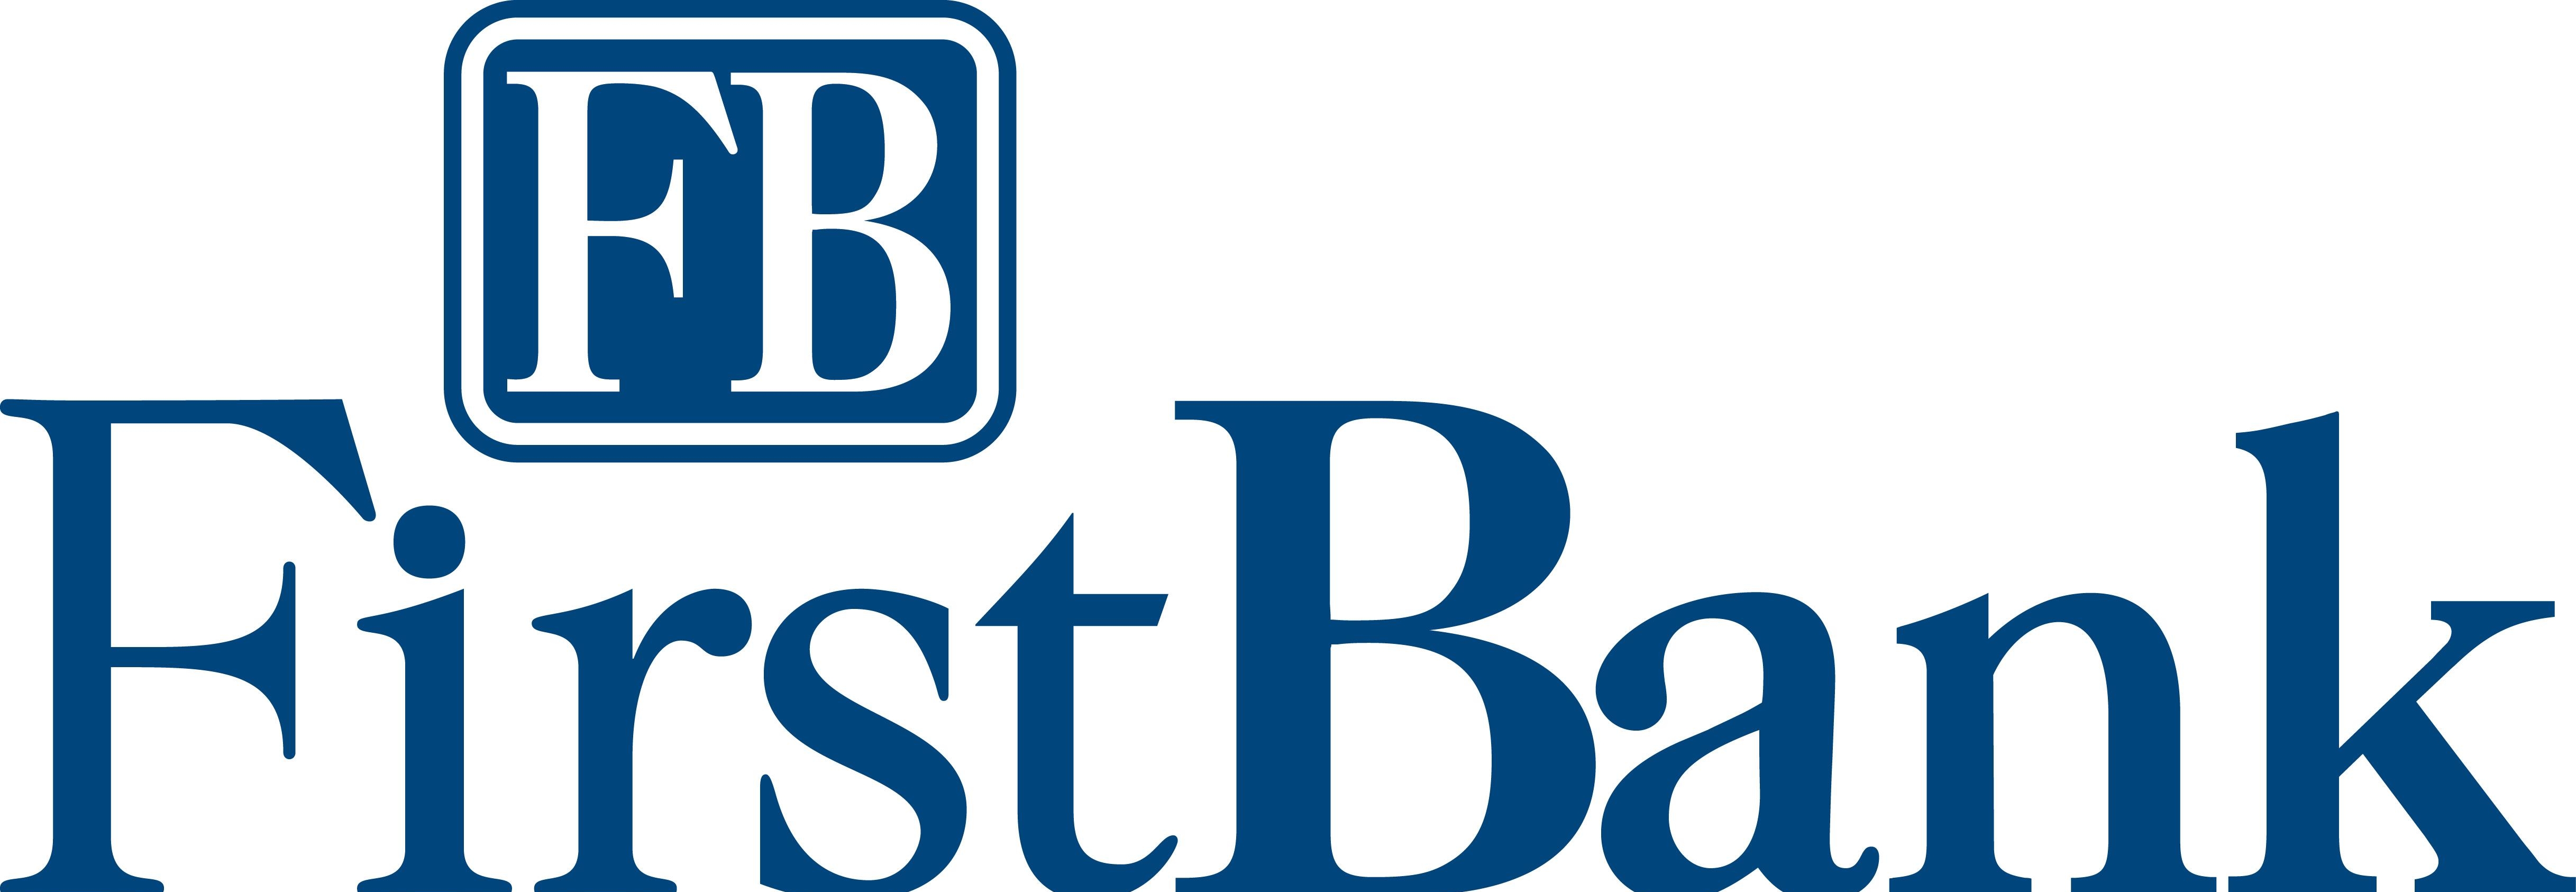 First Bank как основа Федеральной Резервной системы